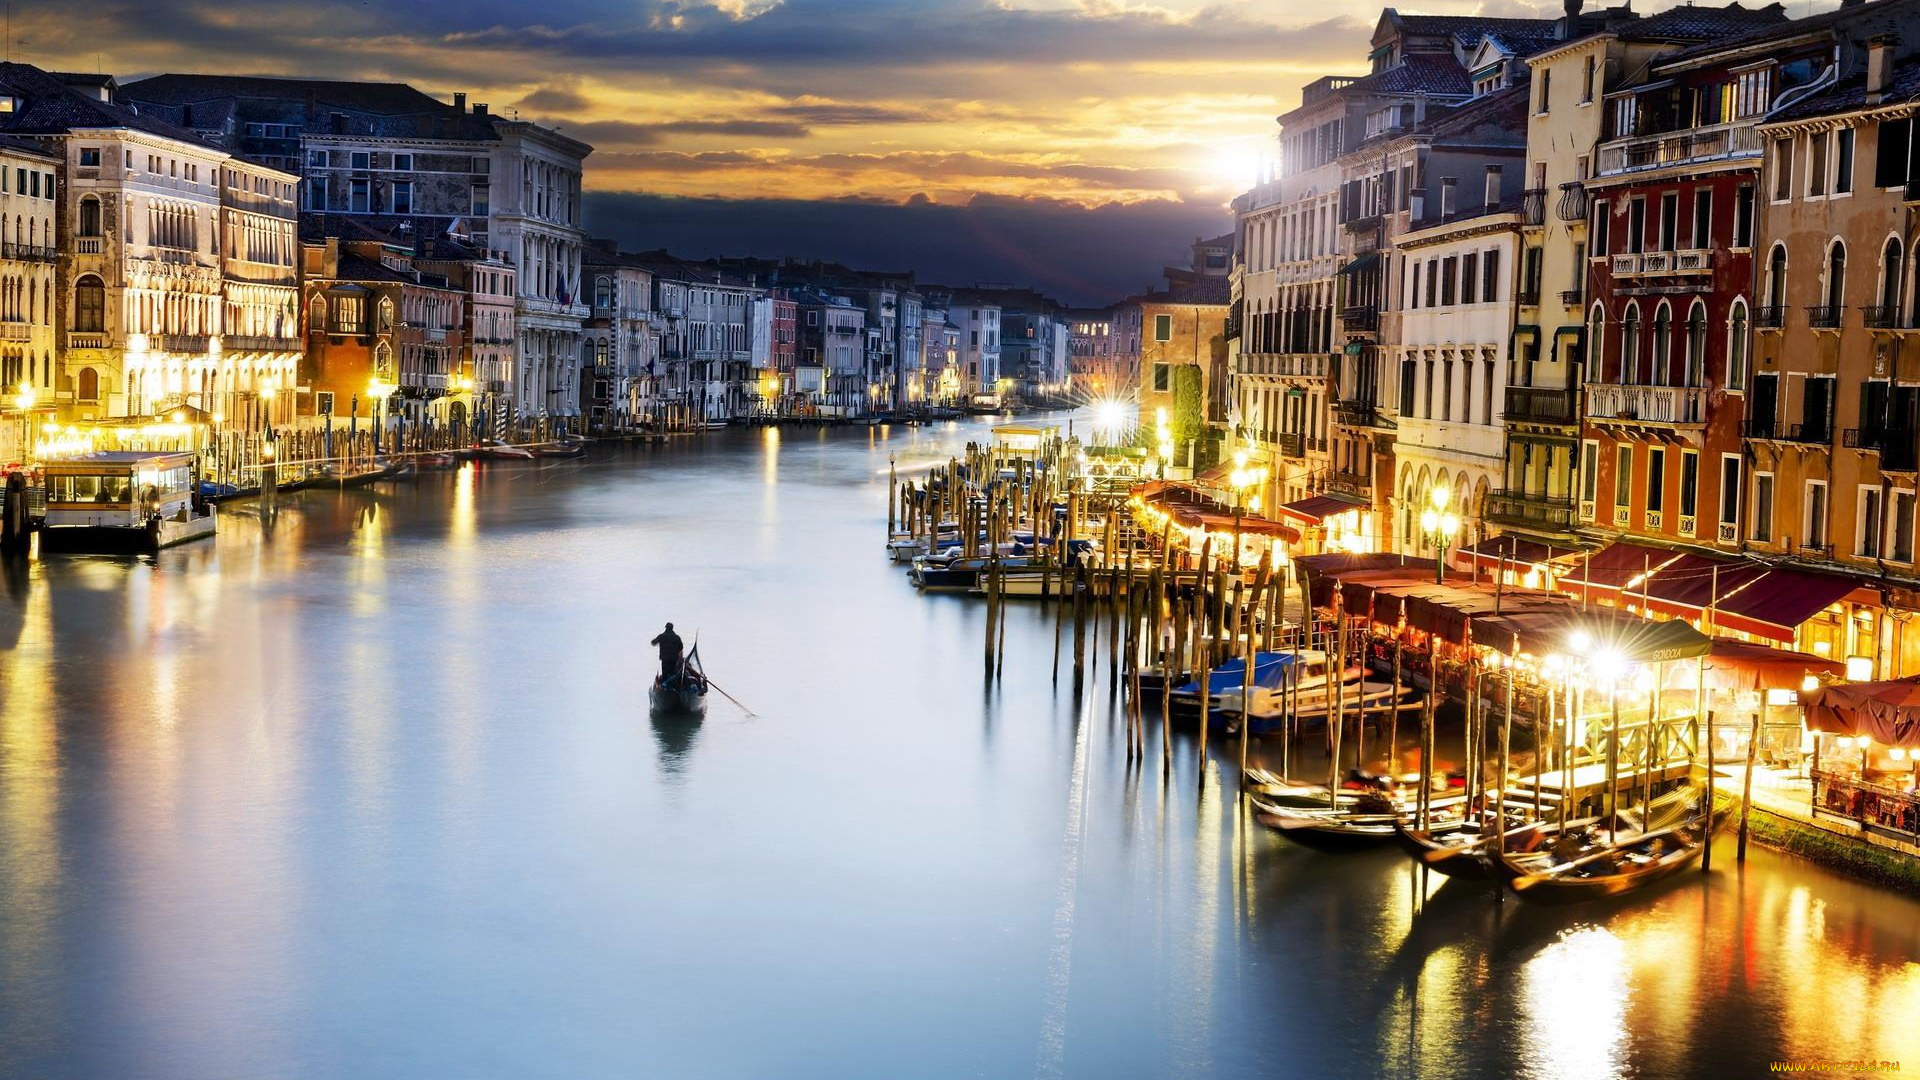 города, венеция, , италия, гондольер, гондолы, лодки, закат, вечер, здания, дома, канал, огни